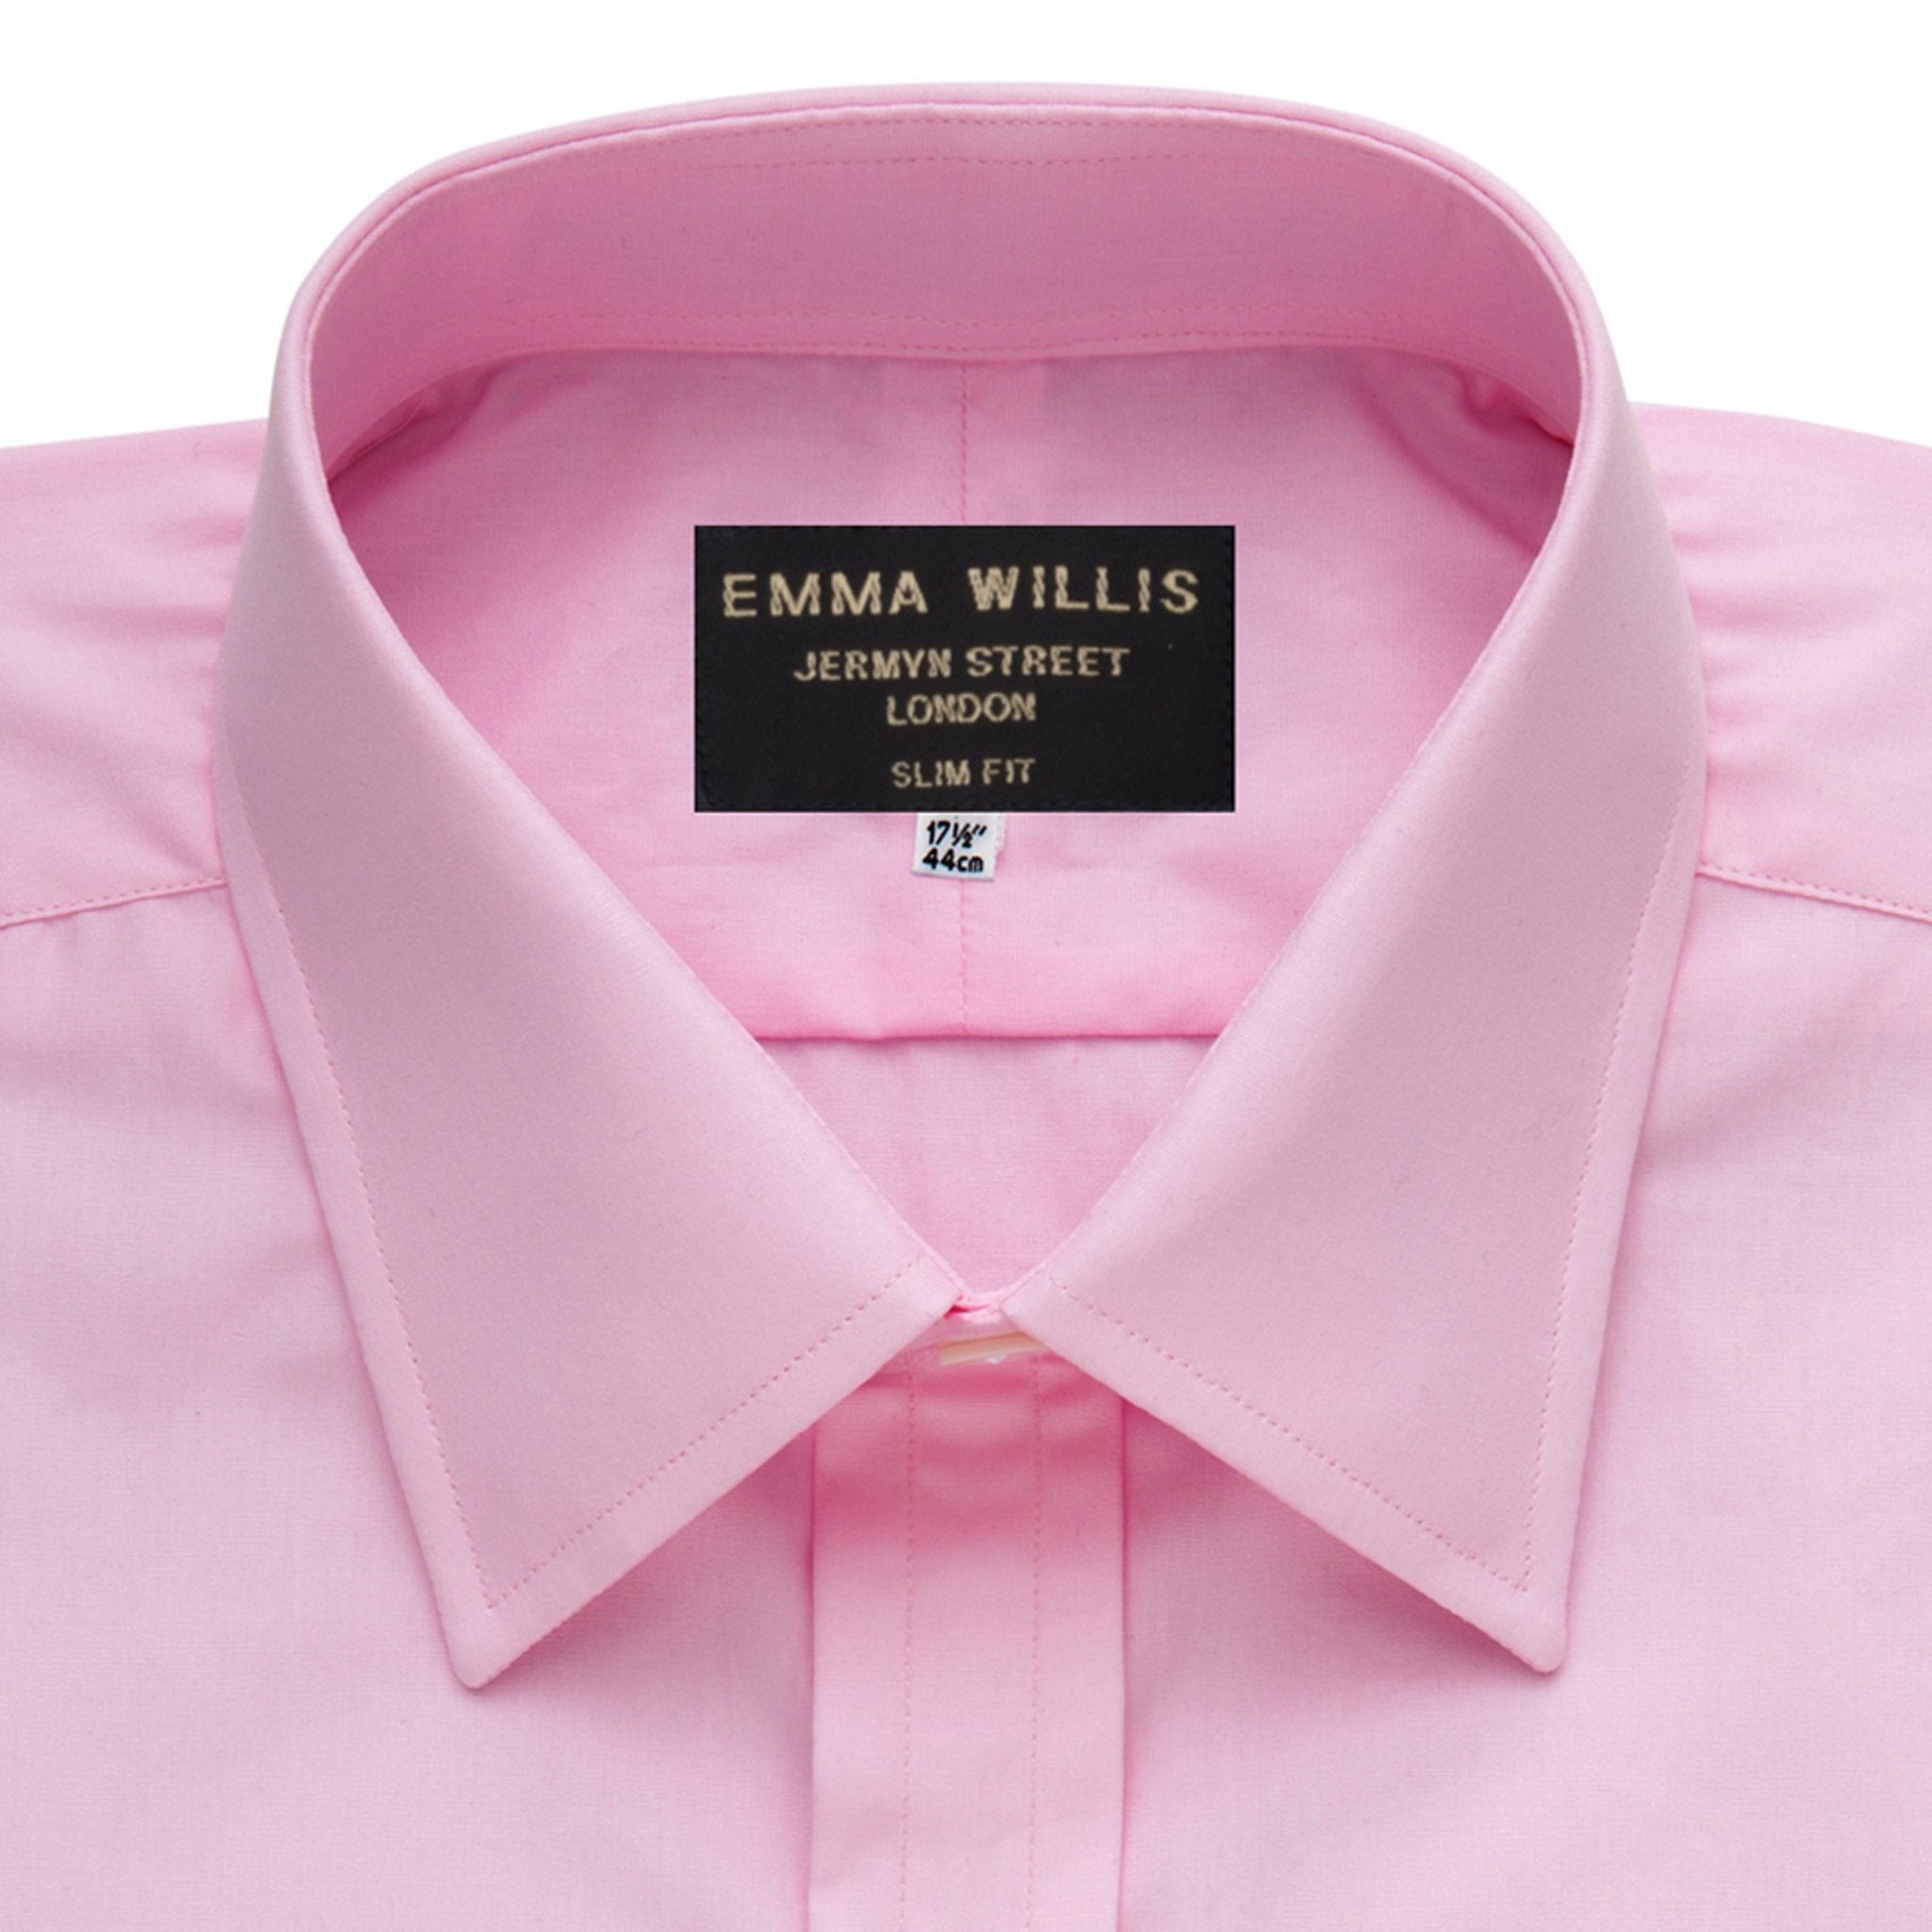 Pink Superior Cotton Shirt - Bespoke freeshipping - Emma Willis